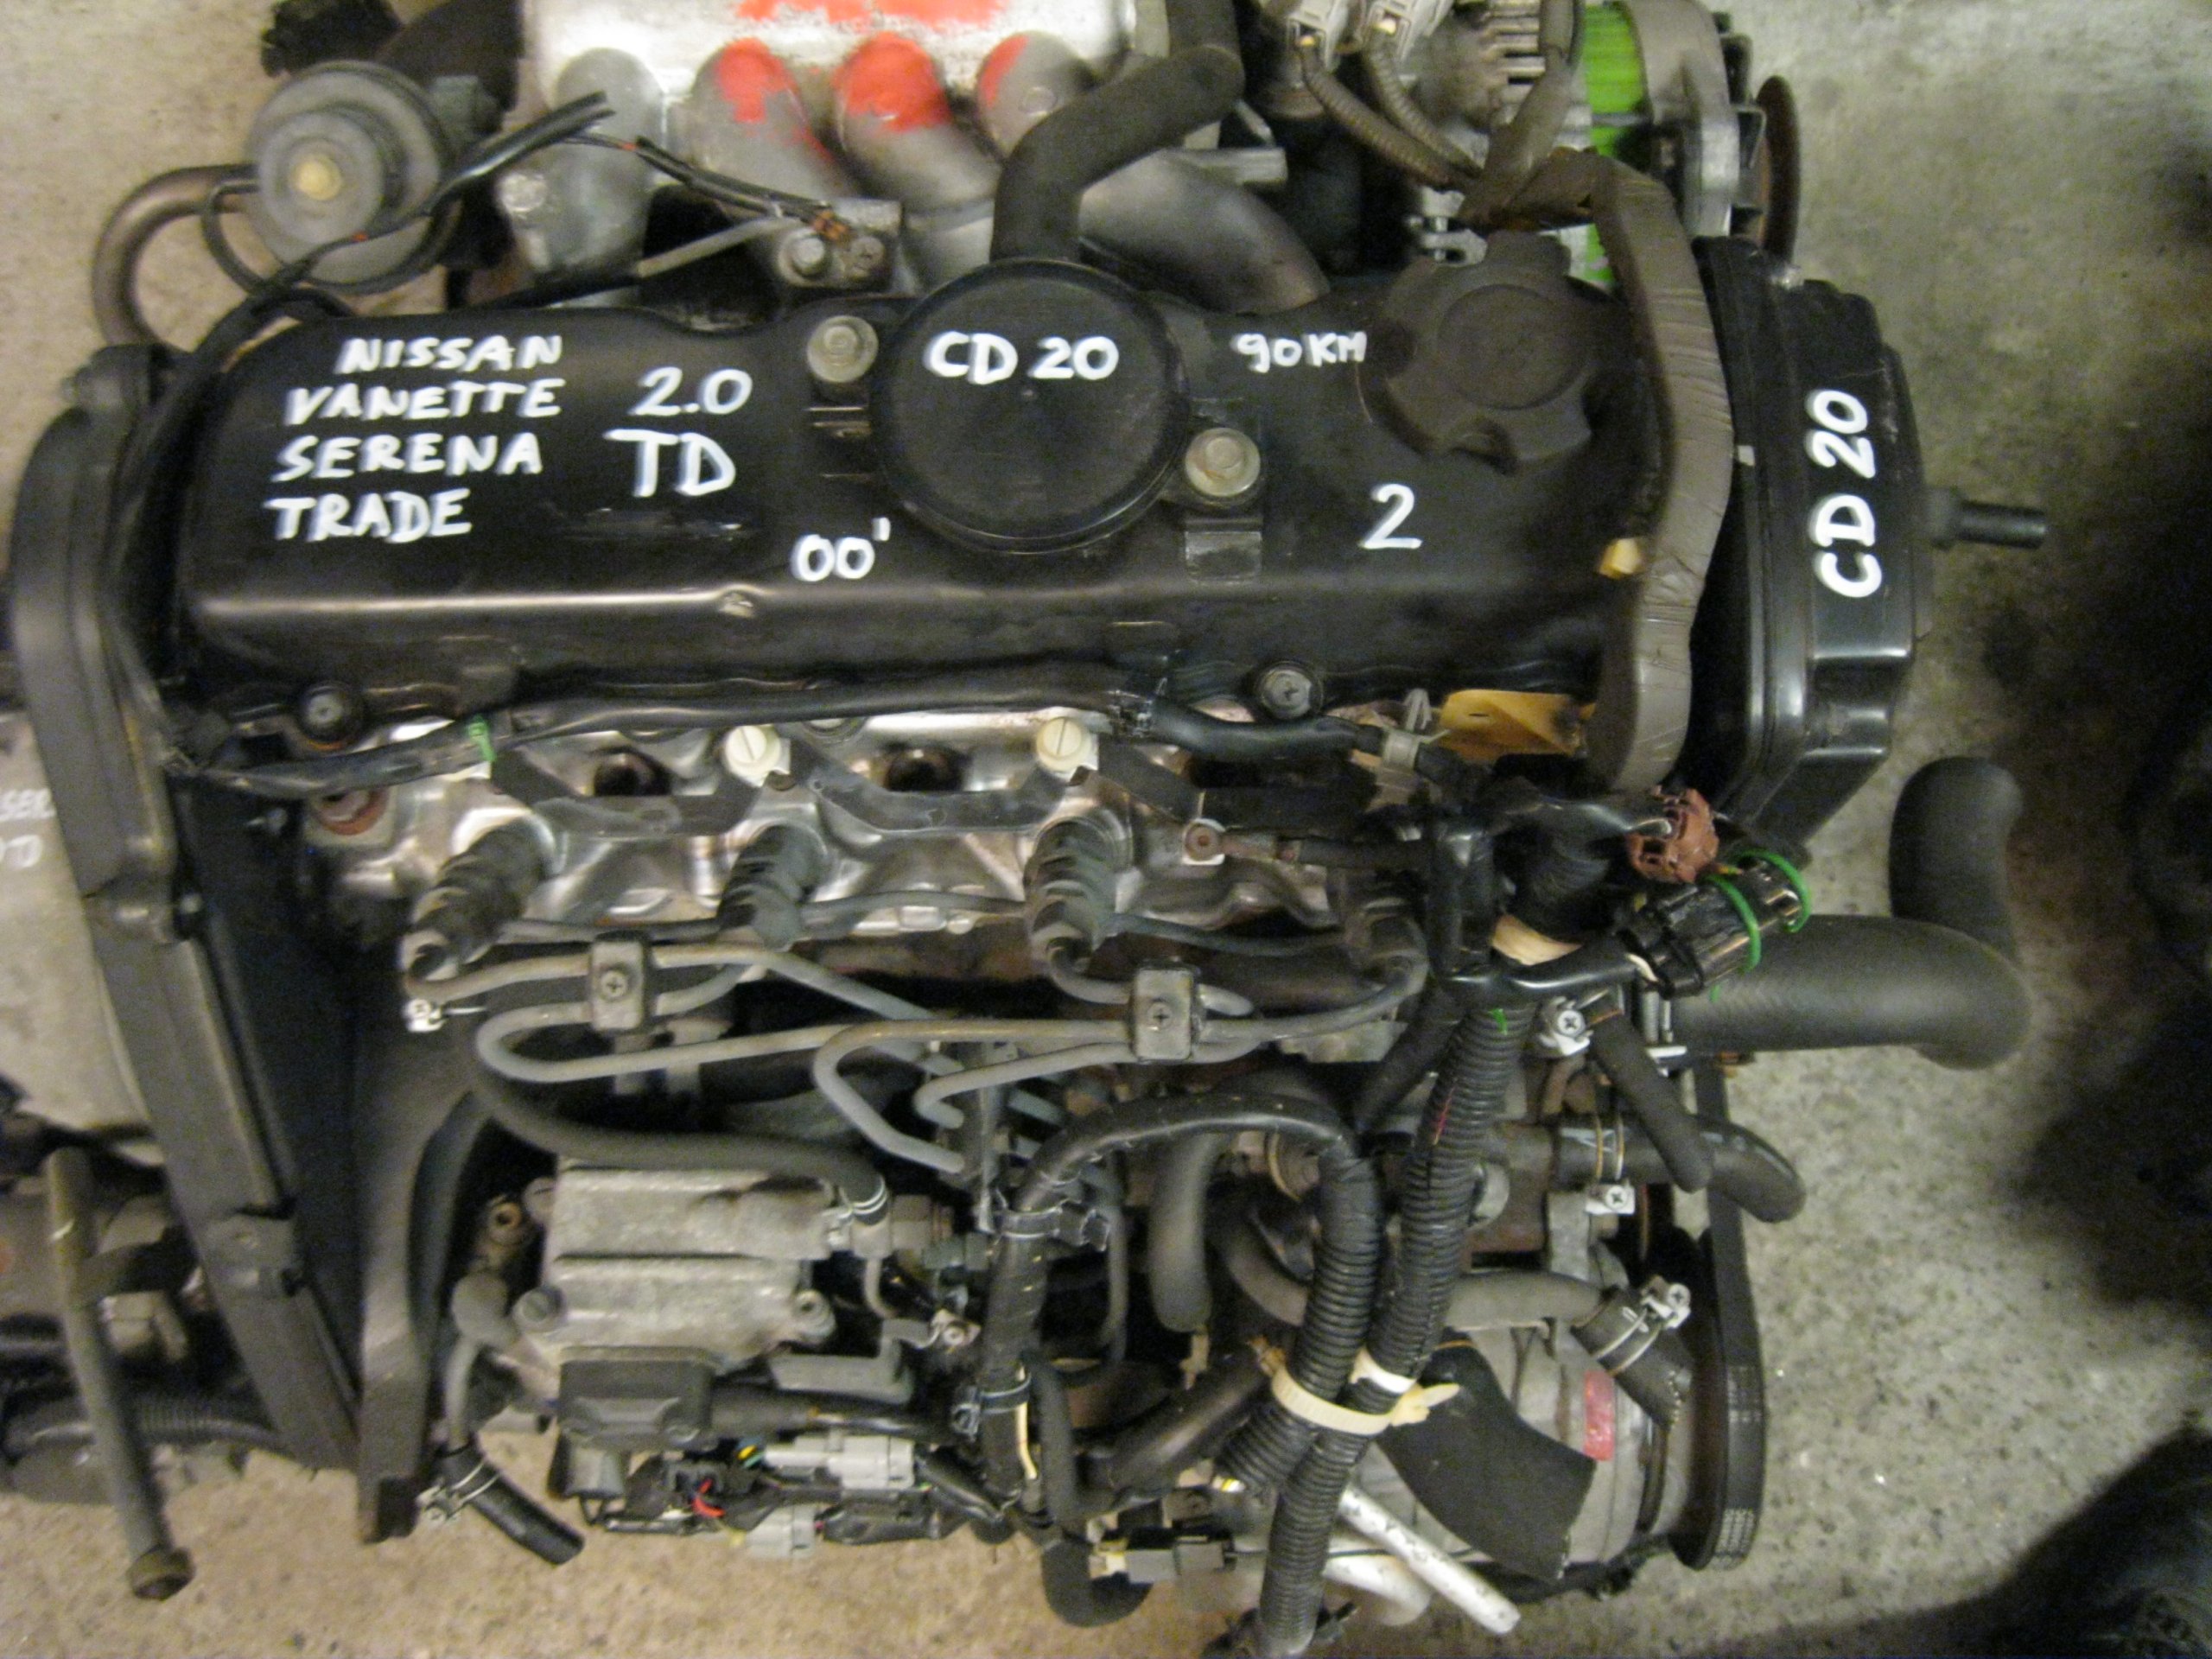 Ниссан сд. Двигатель Nissan дизельный CD 20. Мотор Ниссан cd20. Двигатель Ниссан Серена 2.0 дизель. Ниссан Серена ДВС сд20.